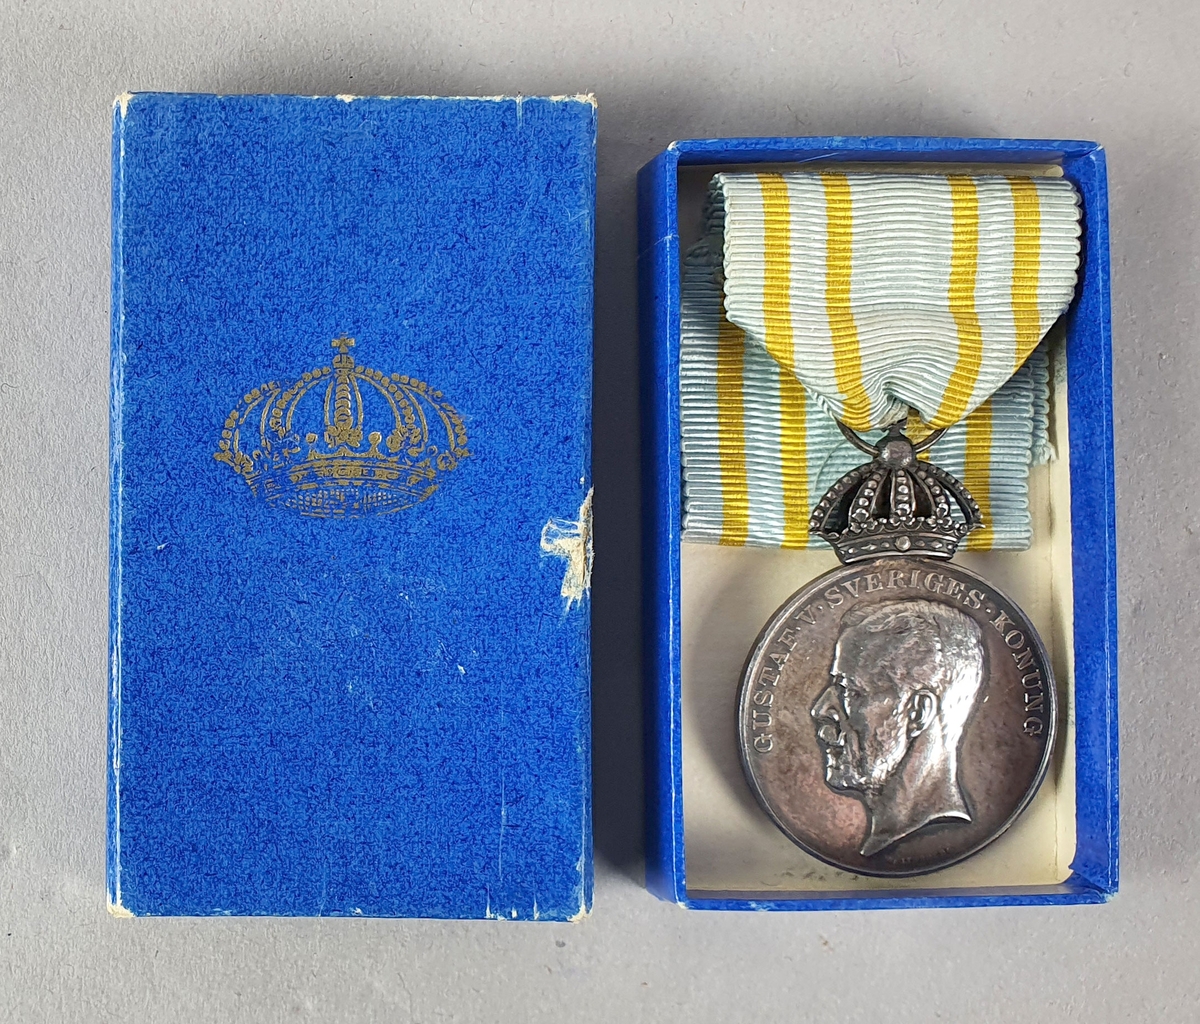 Sølvfarget minnemedalje med motiv av Kong Gustaf V i profil på den ene siden og tre kroner på den andre siden. Det er festet et opphengsbånd til medaljen. Med medaljen følger det en blå eske..